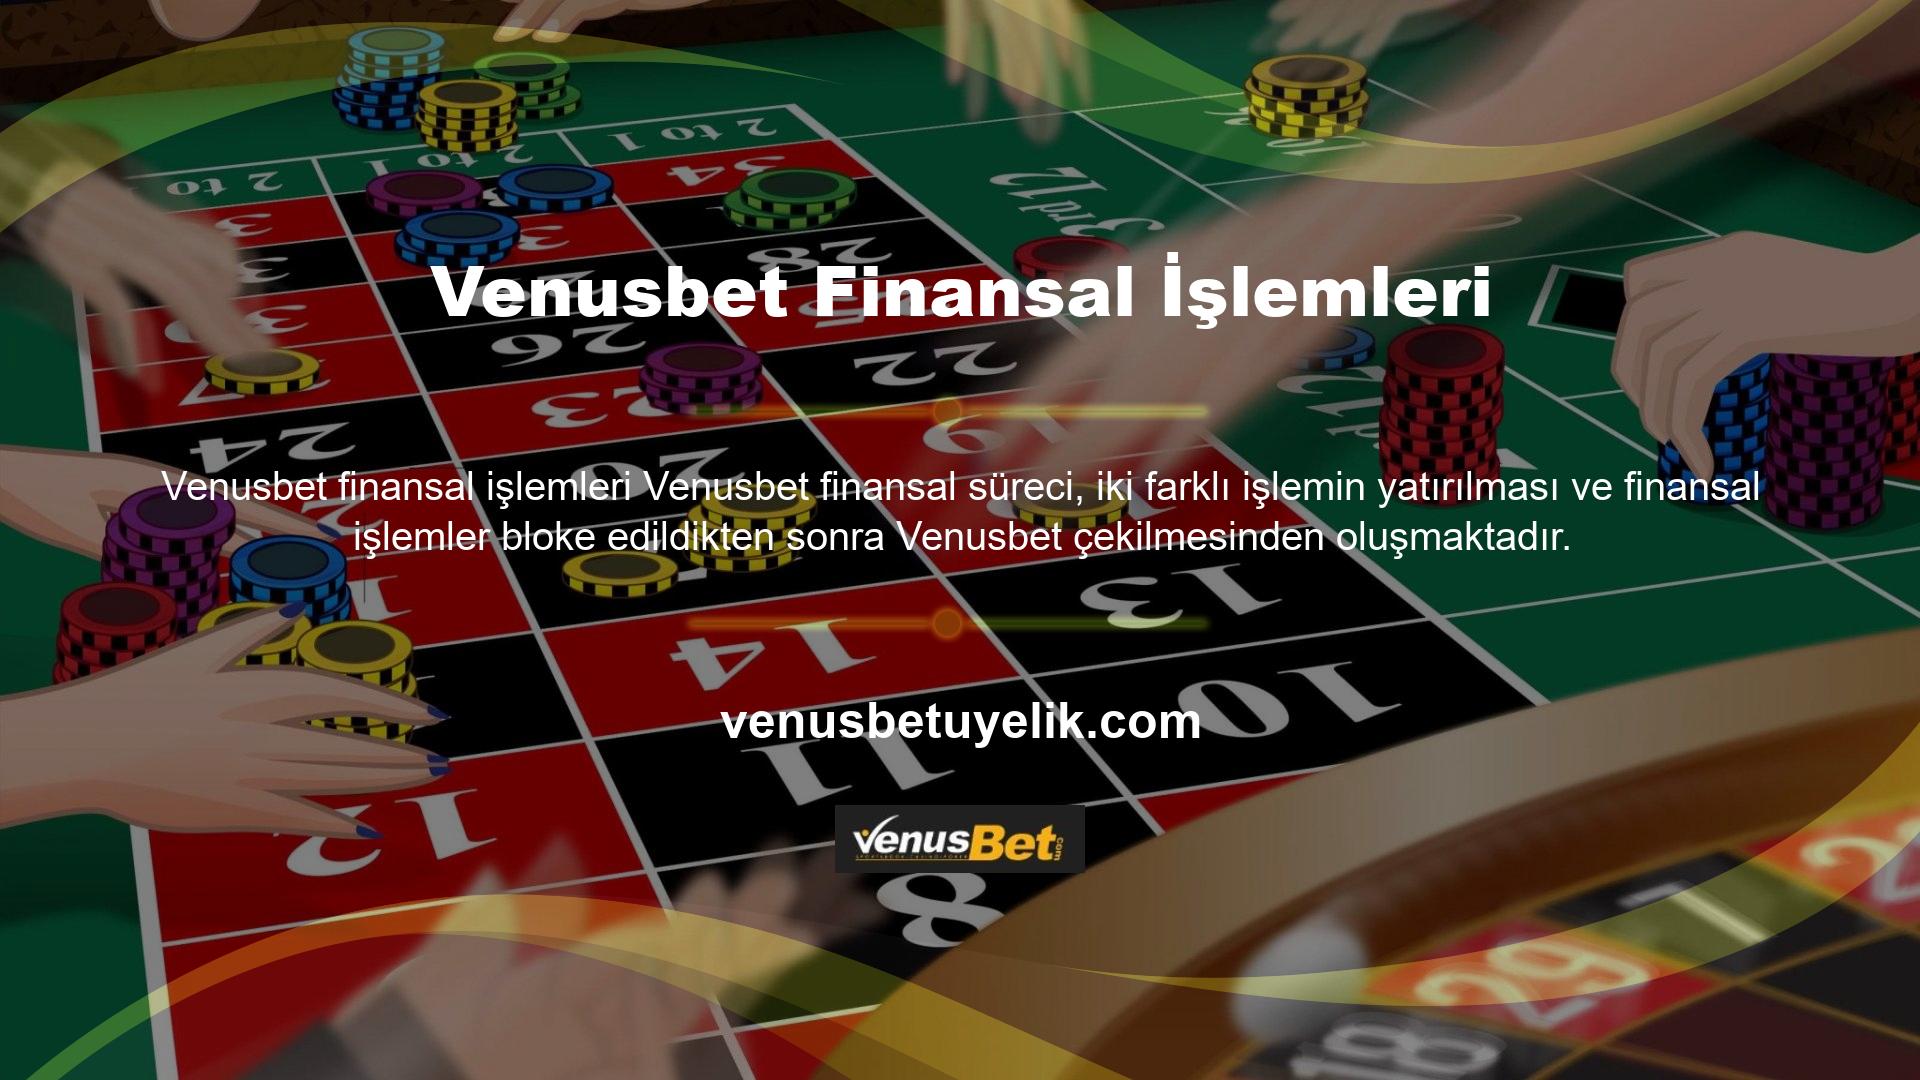 Üyeler hesap açtıktan sonra oyunu oynamak için para yatırmak zorundadırlar ancak Venusbet finansal işlemlerinde bir diğer sorun da kazançlarını çekmeleridir